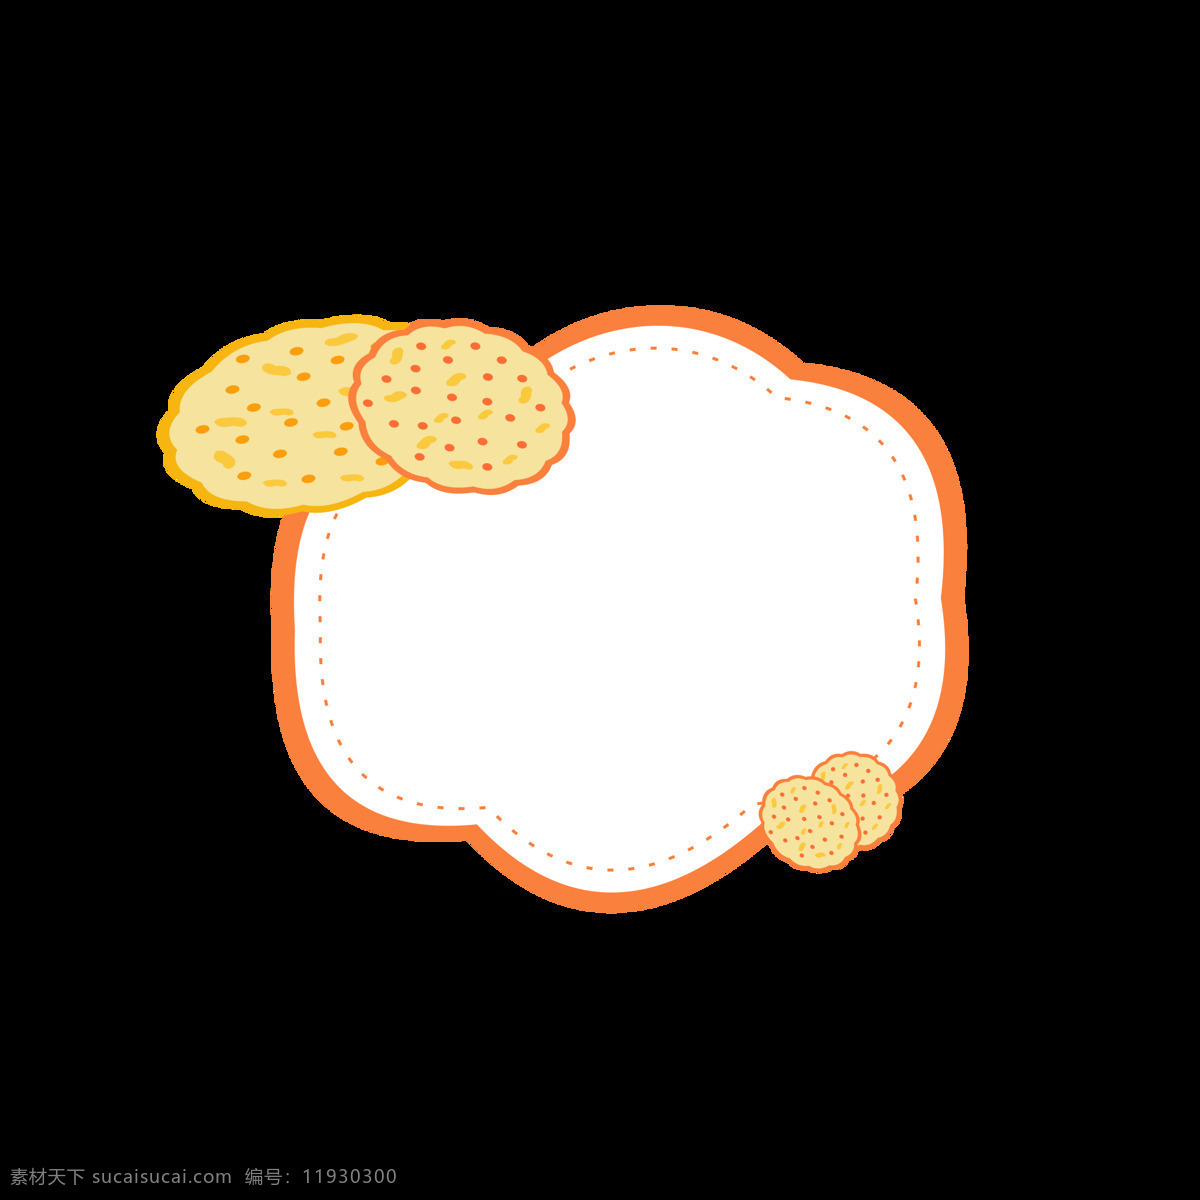 原创 卡通 可爱 饼干 边框 元素 零食 橘色边框 元素设计